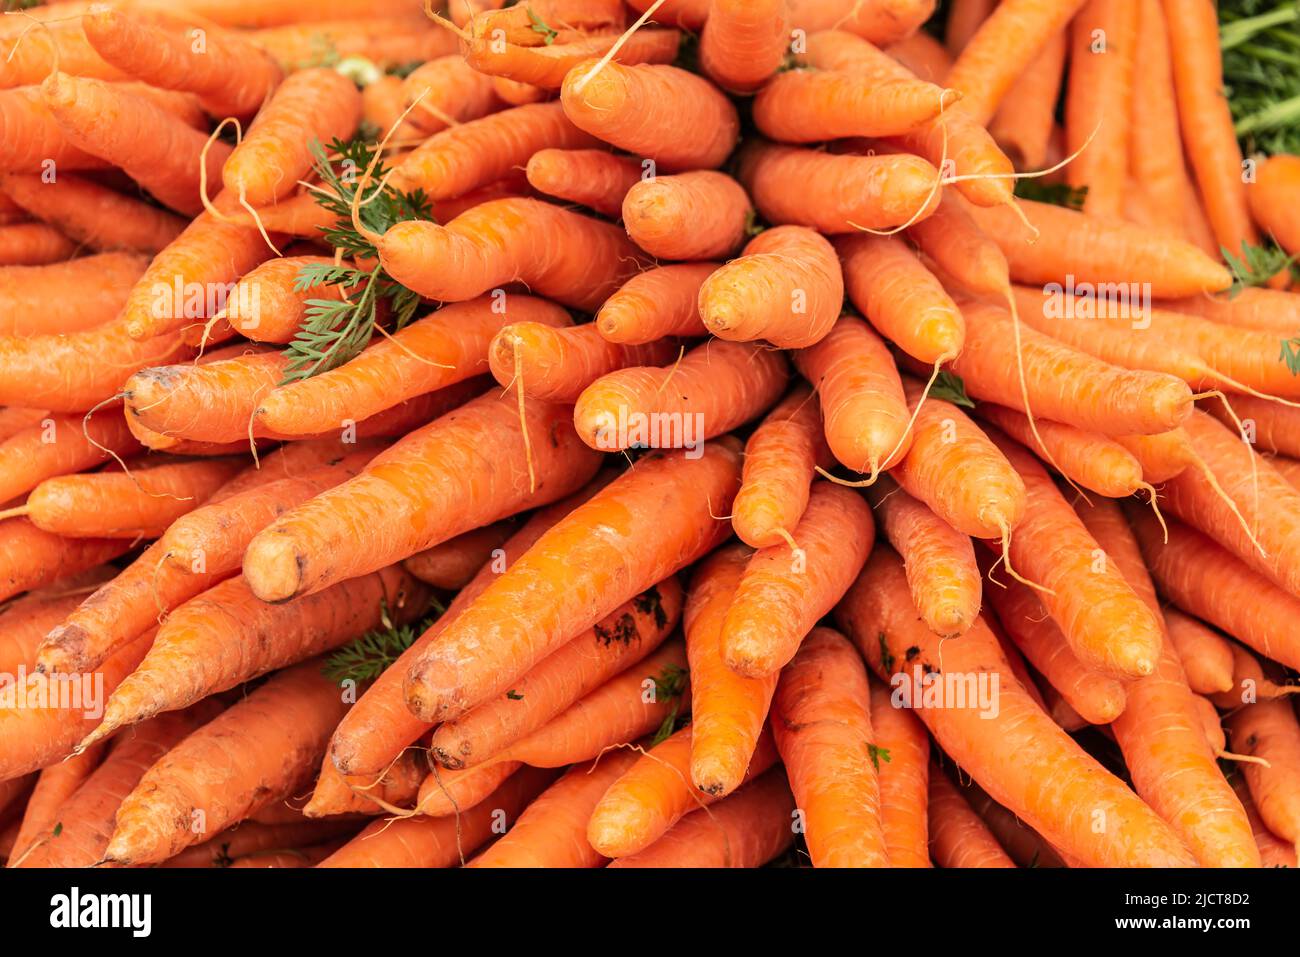 primer plano de zanahorias frescas apiladas en un puesto de mercado Foto de stock